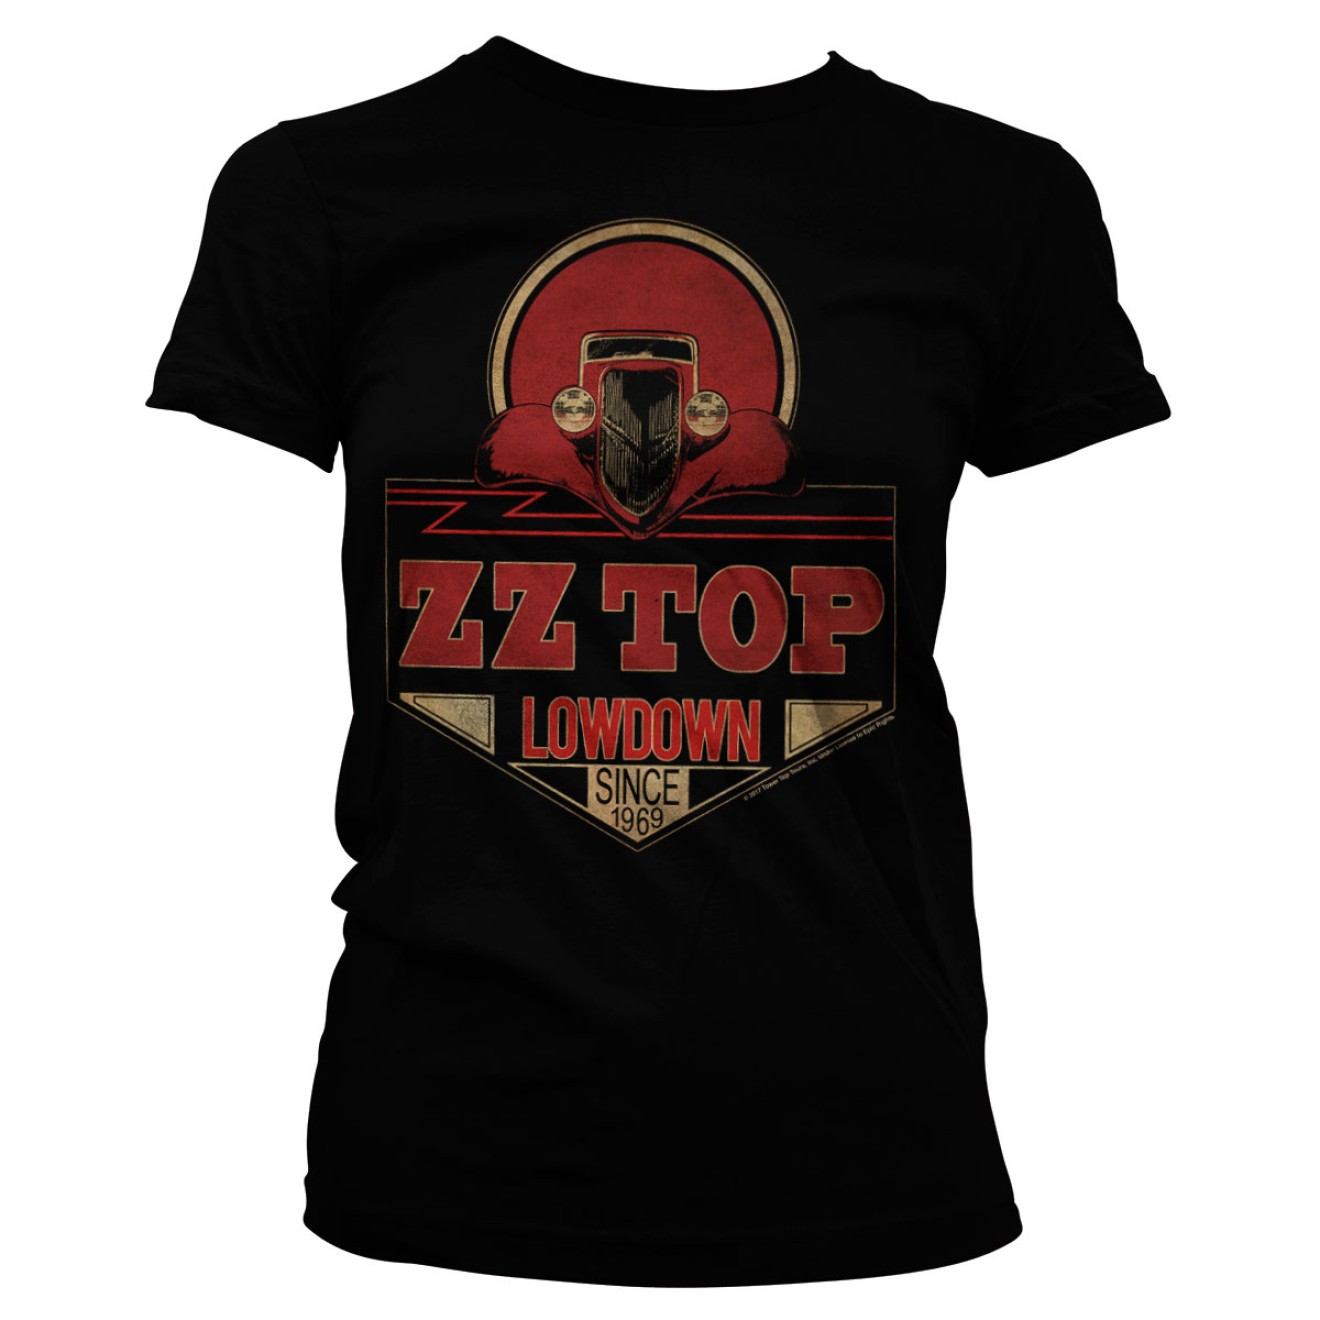 ZZ-Top - Lowdown Since 1969 Girly Tee Frauen Top